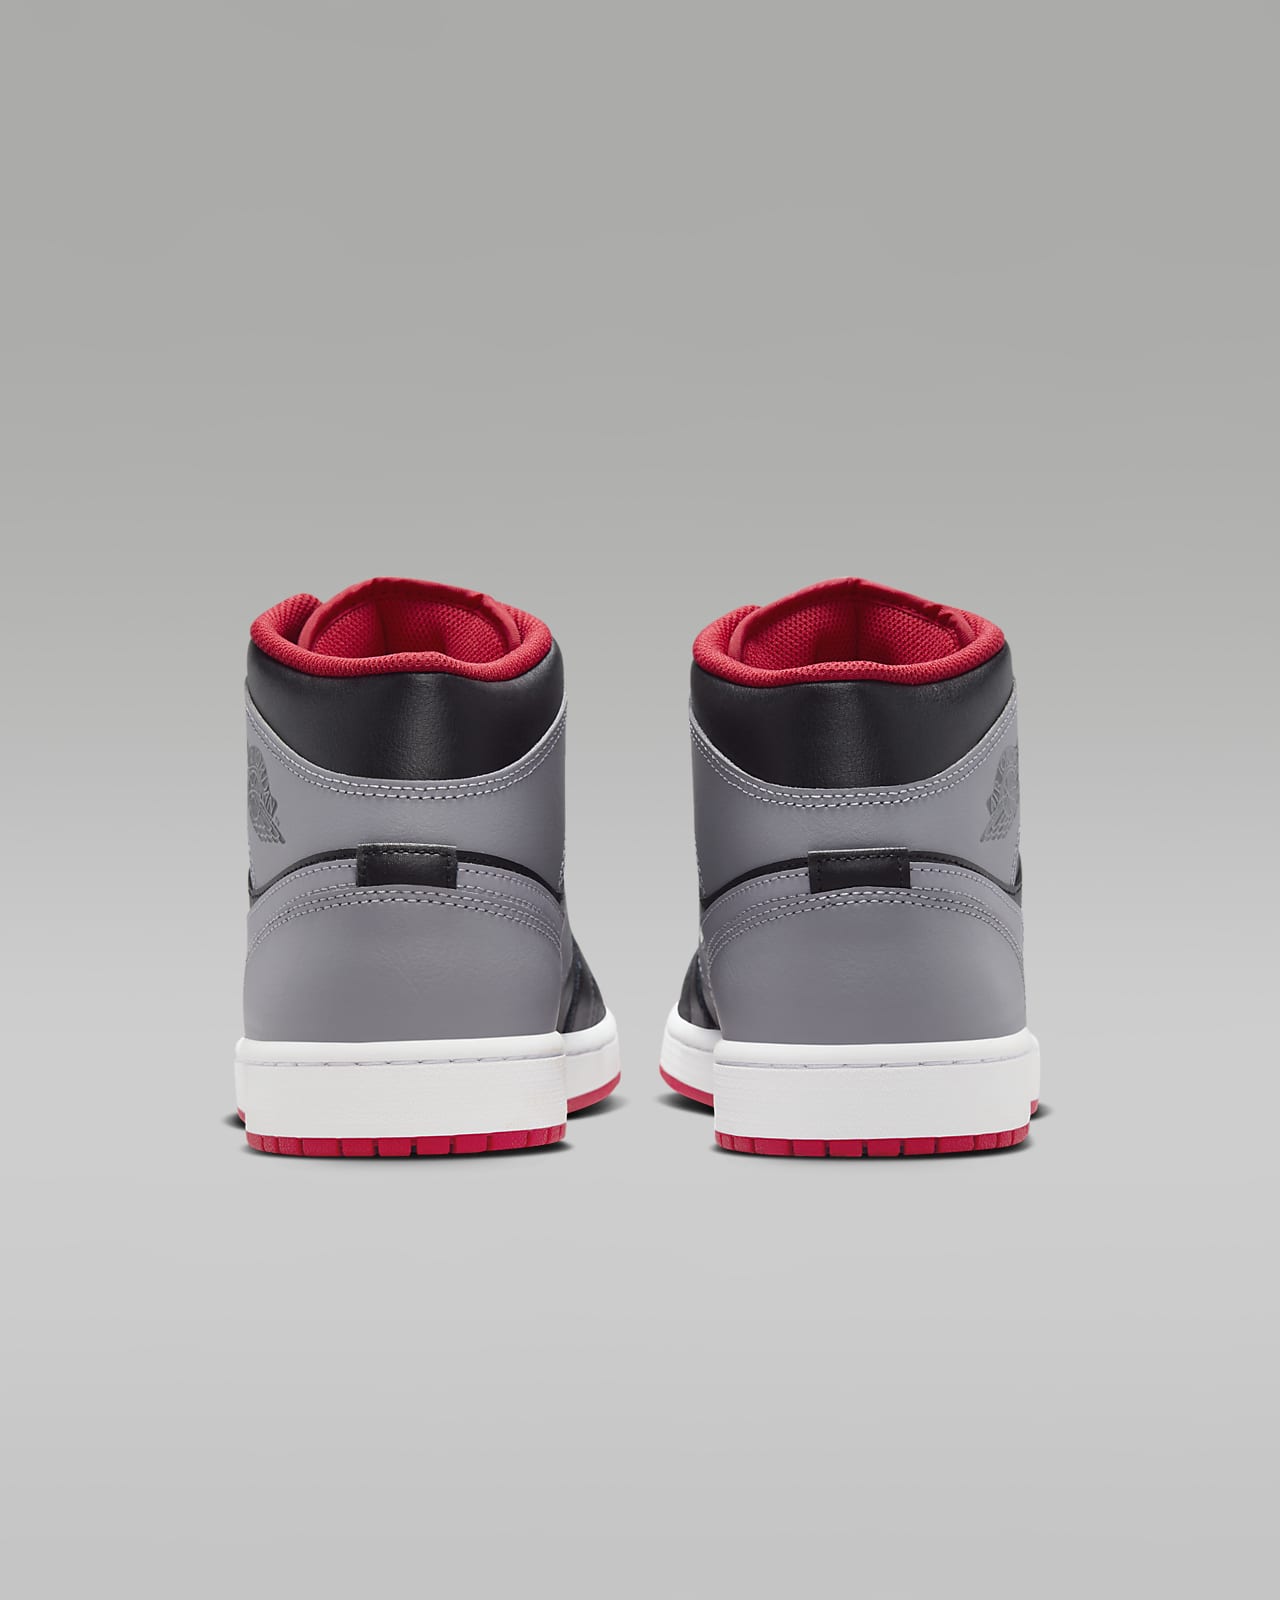 Jordan Nike Essentials jumpsuit in black/red - ShopStyle